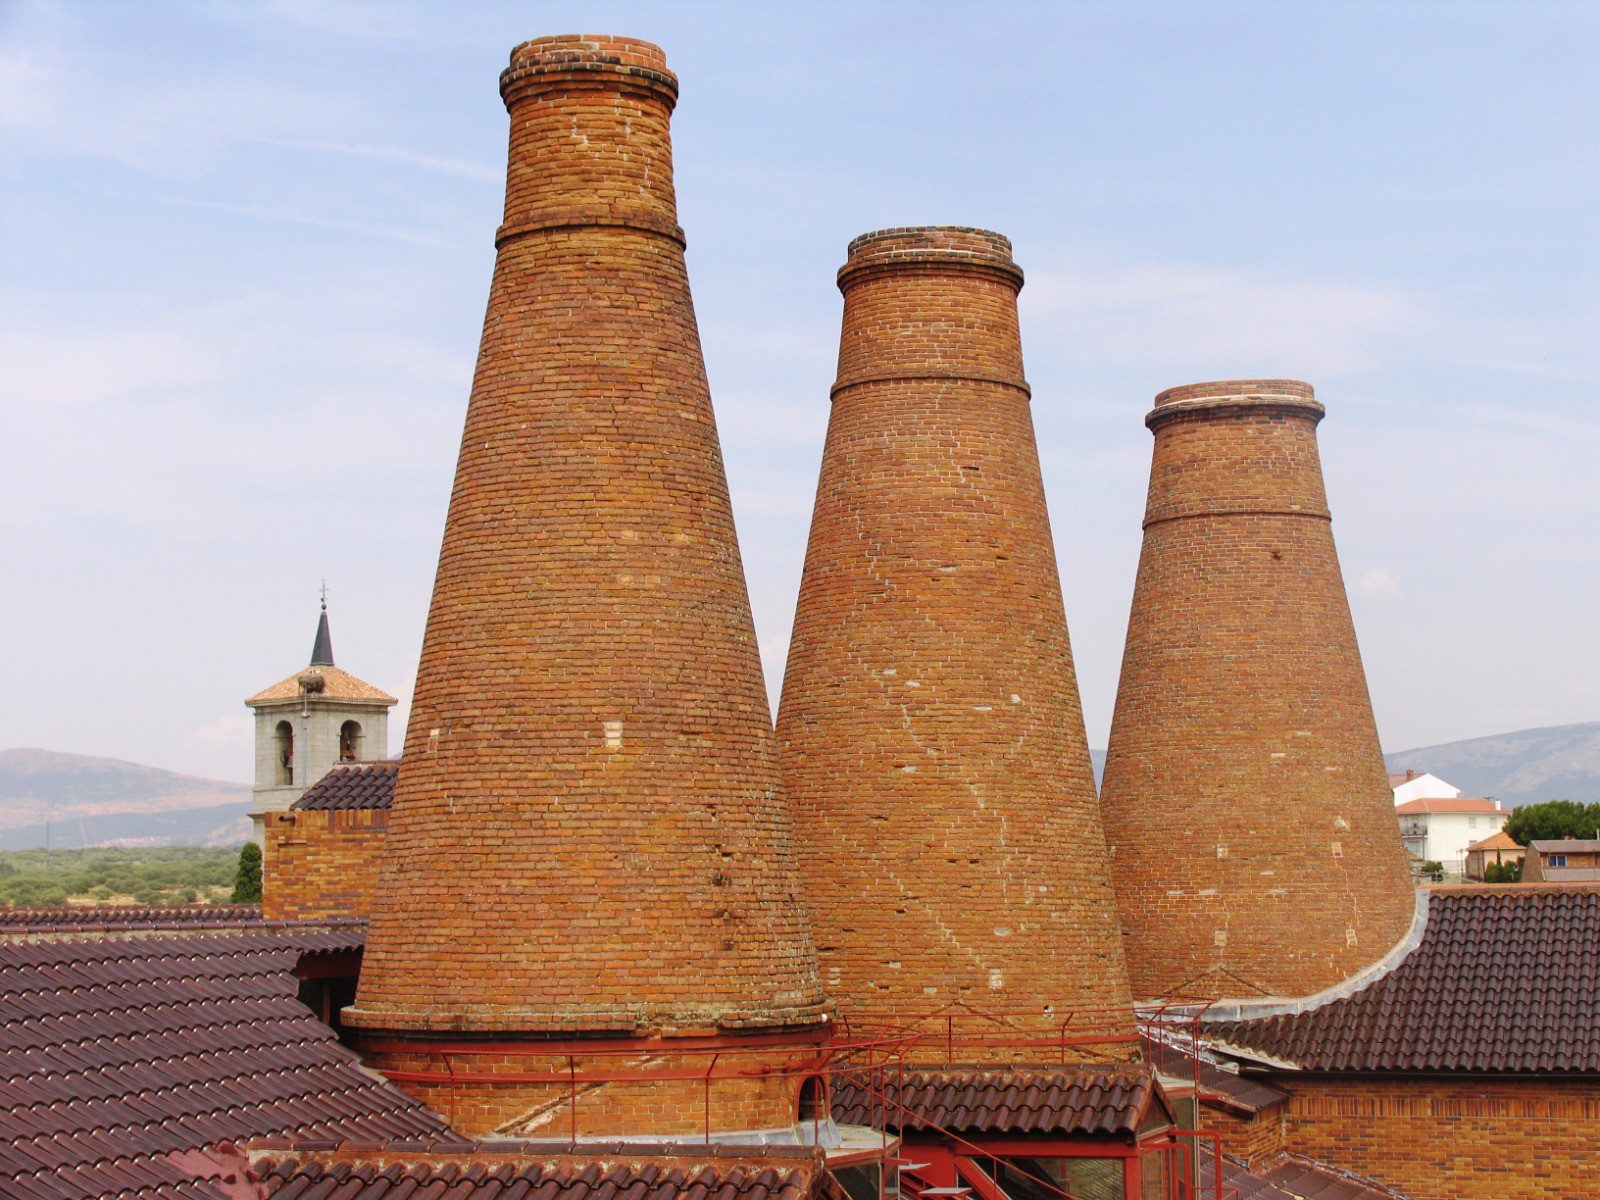 Vista de las tres chimeneas de la antigua fábrica de cerámica